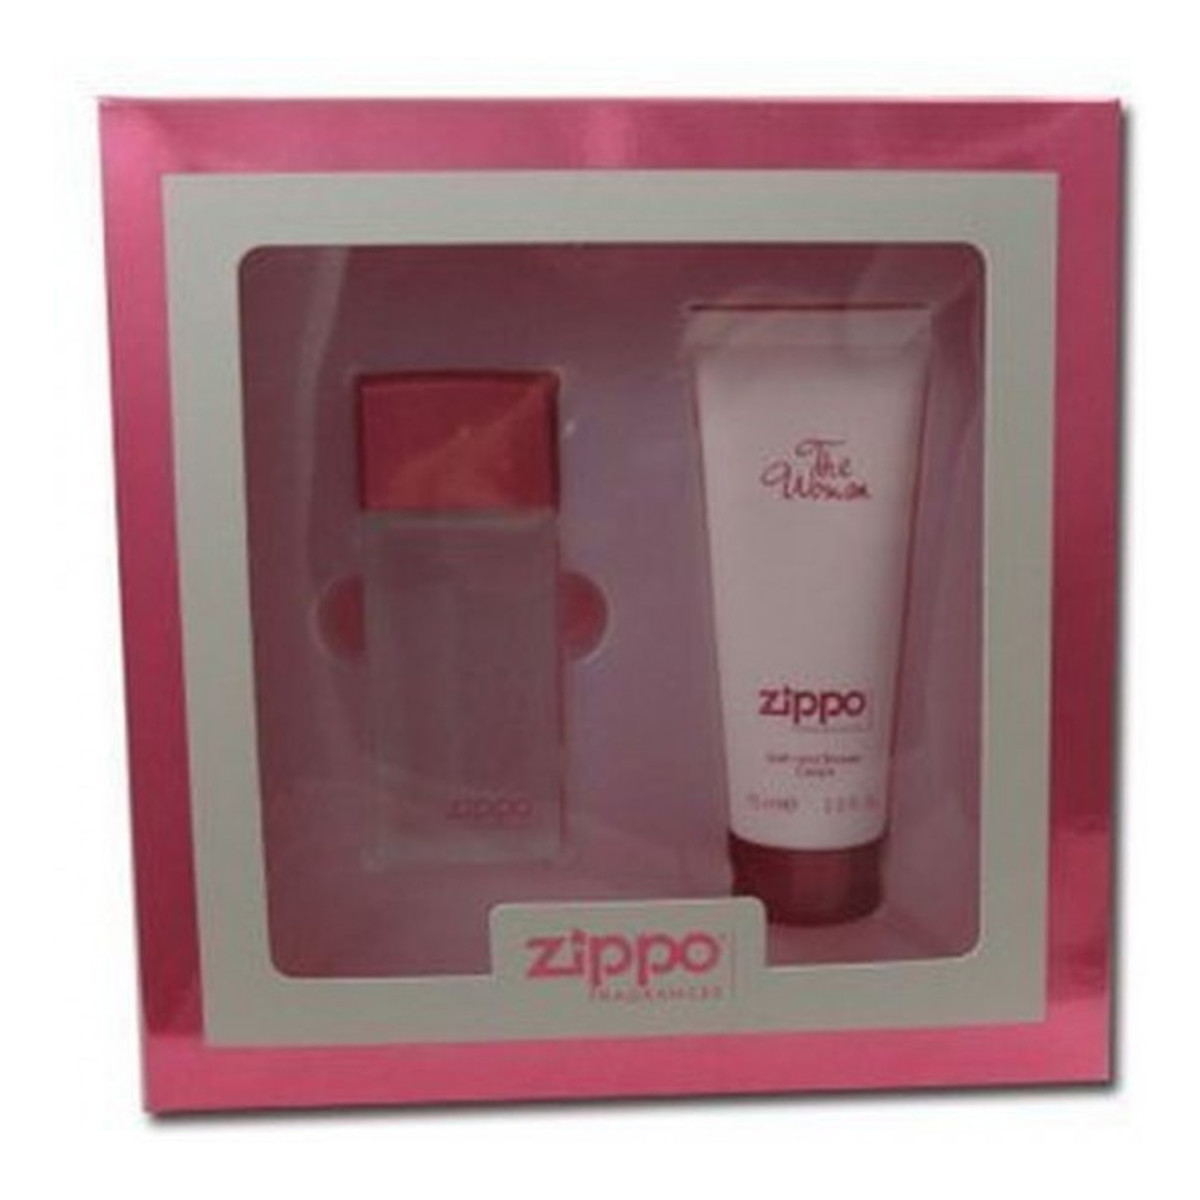 Zippo The Woman Zestaw woda perfumowana spray + żel pod prysznic